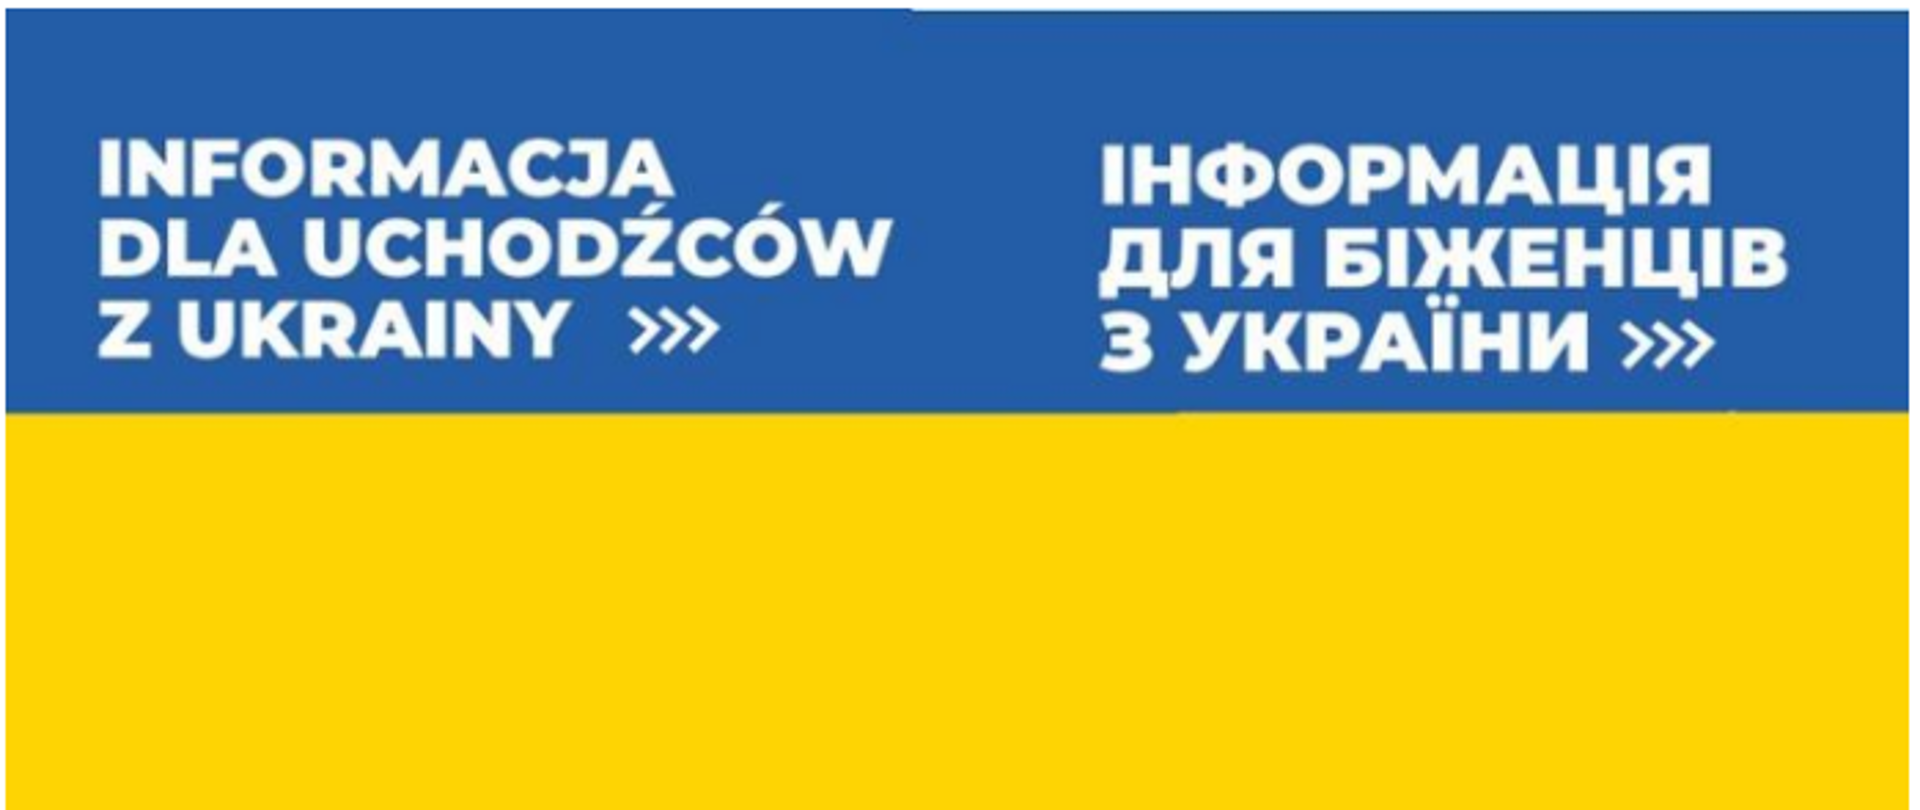 informacja_dla_uchodzcow_z_ukrainy